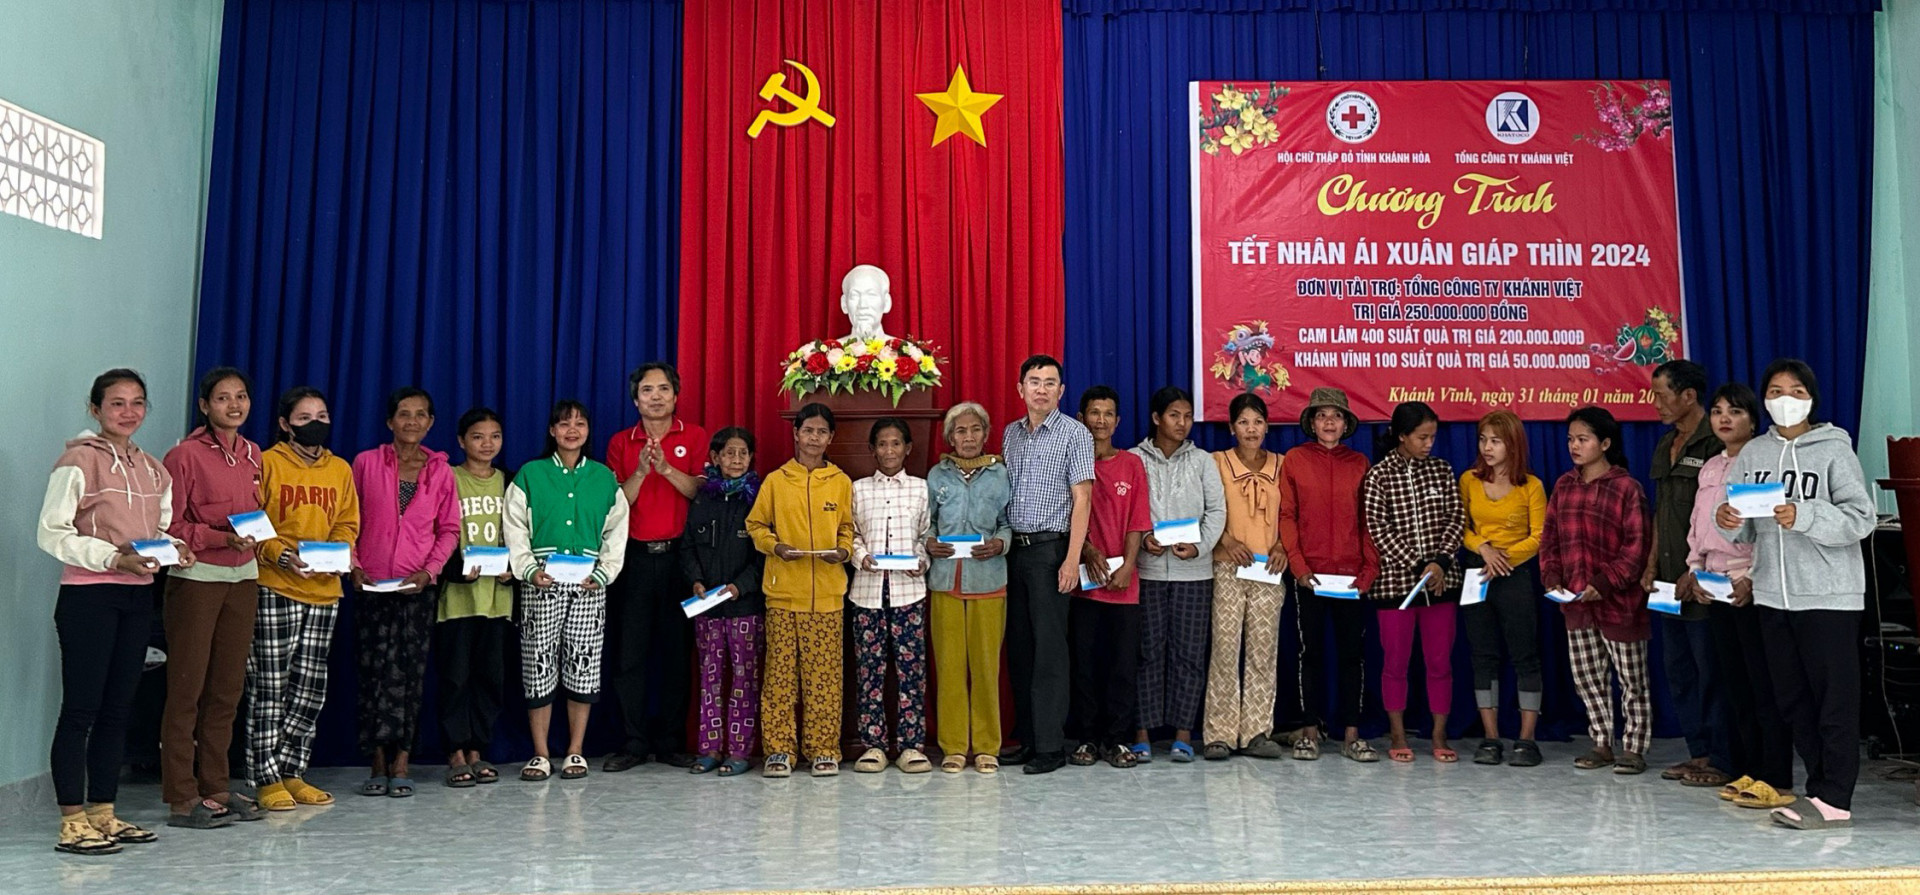 Đại diện Hội Chữ Thập đỏ tỉnh và Tổng Công ty Khánh Việt trao quà cho người dân huyện Khánh Vĩnh